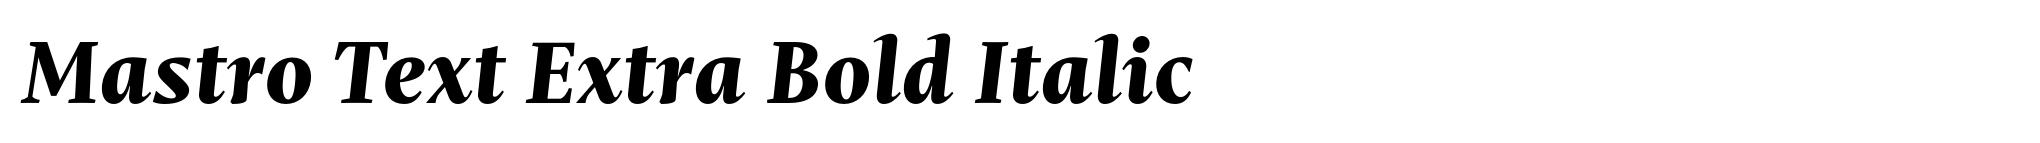 Mastro Text Extra Bold Italic image